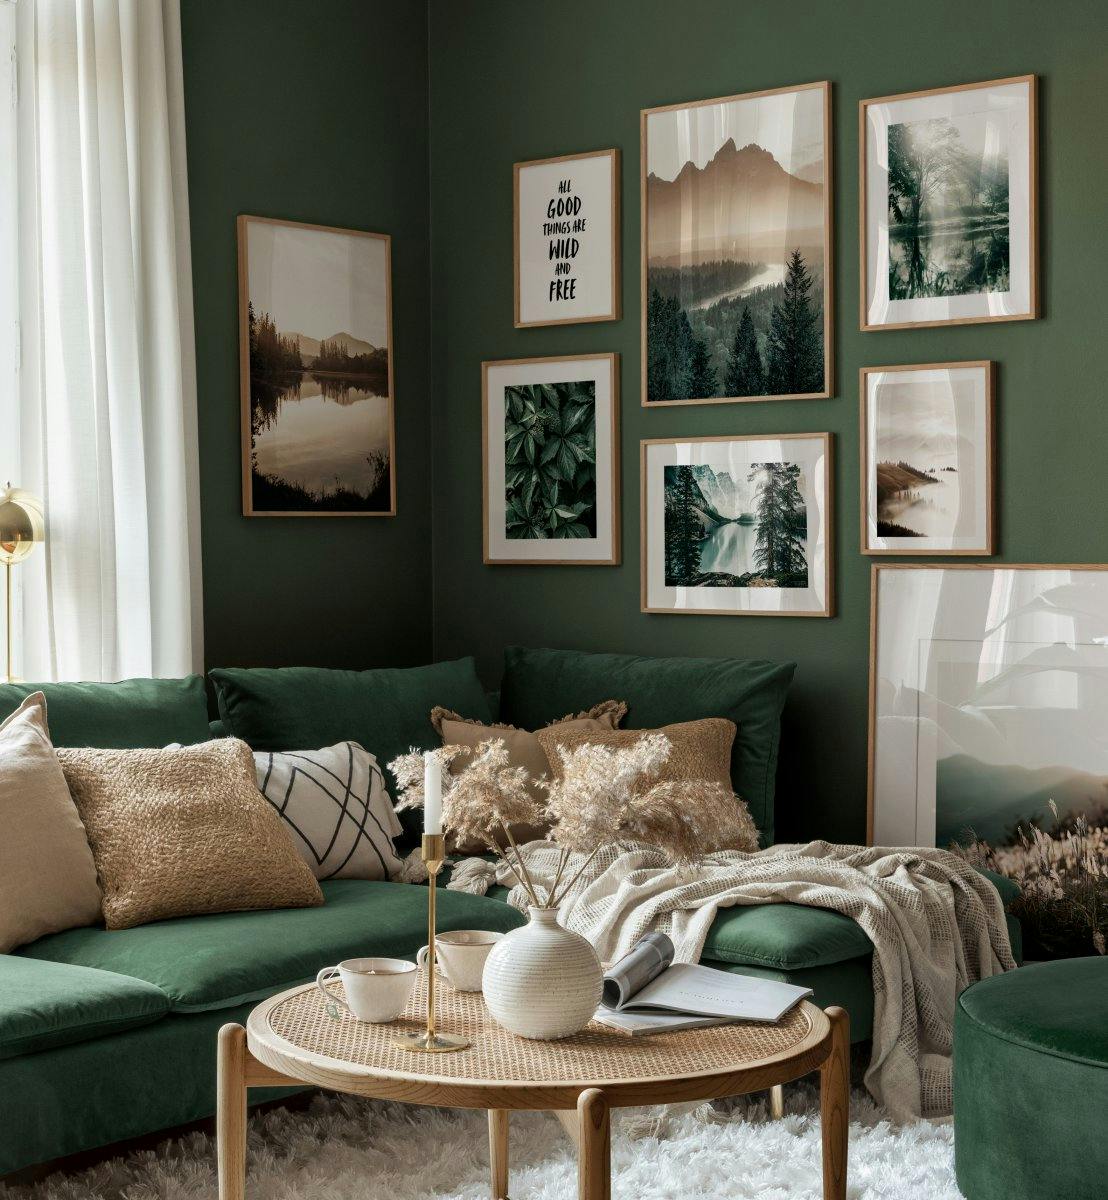 Spokojna przyroda krajobraz zielone plakaty do salonu